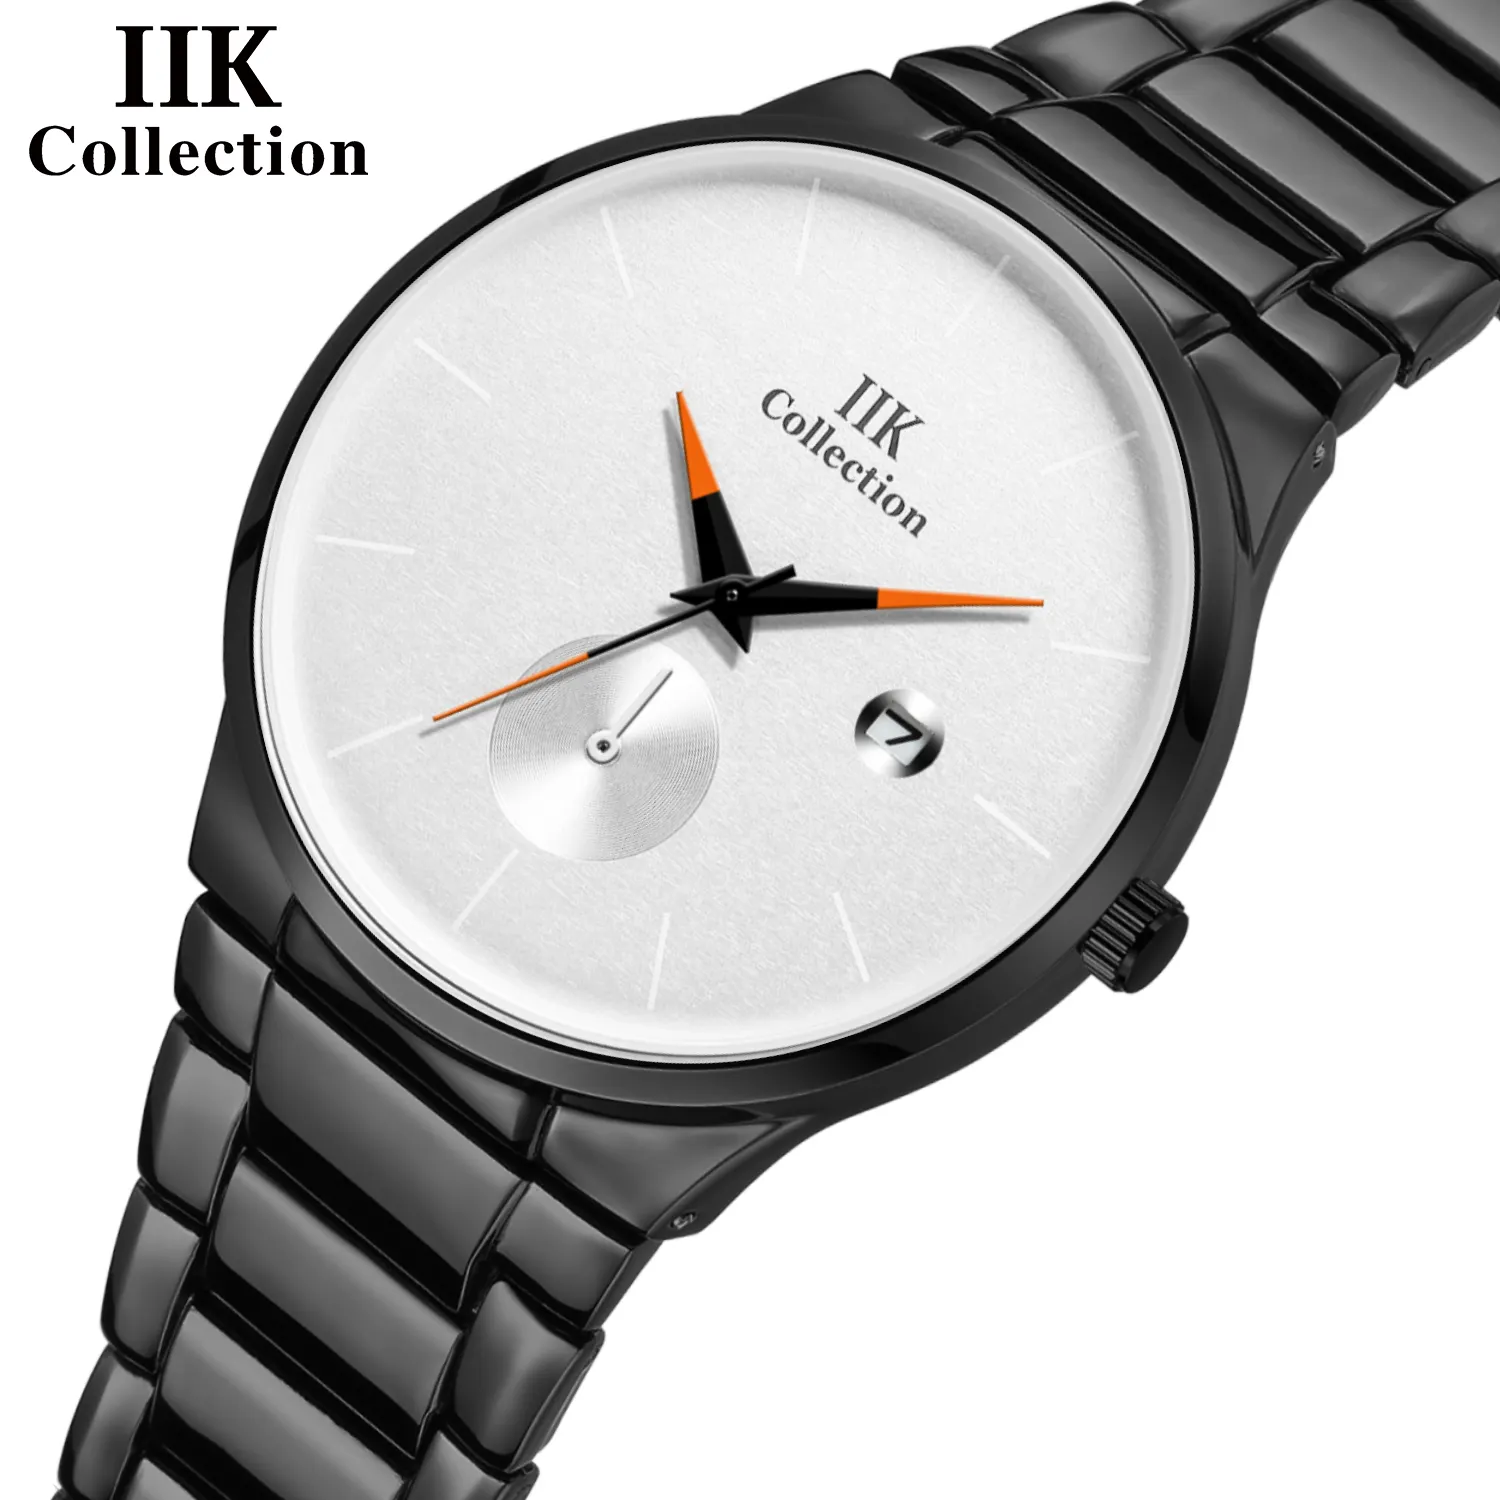 Топ 2019, коллекция IIK, Oem часы, Черные Мужские Простые минималистичные водонепроницаемые часы 3Atm, водонепроницаемые Модные кварцевые мужские часы